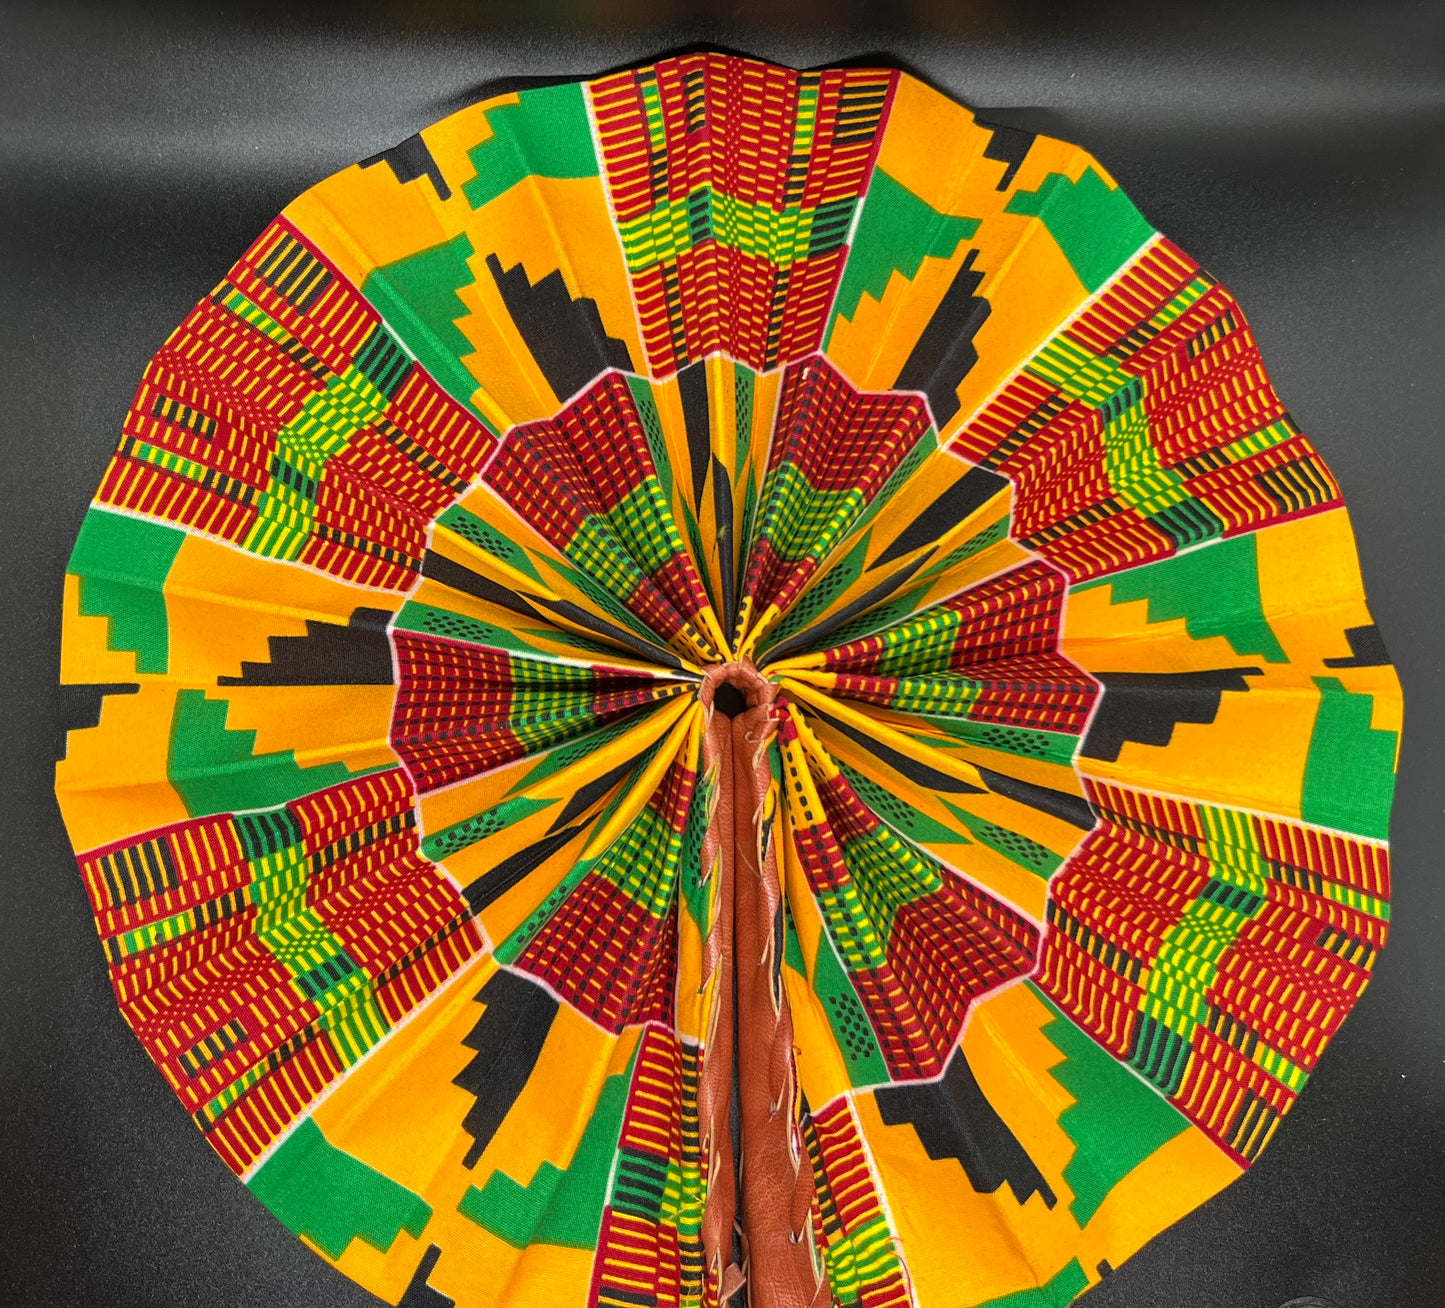 African Fabric Fan